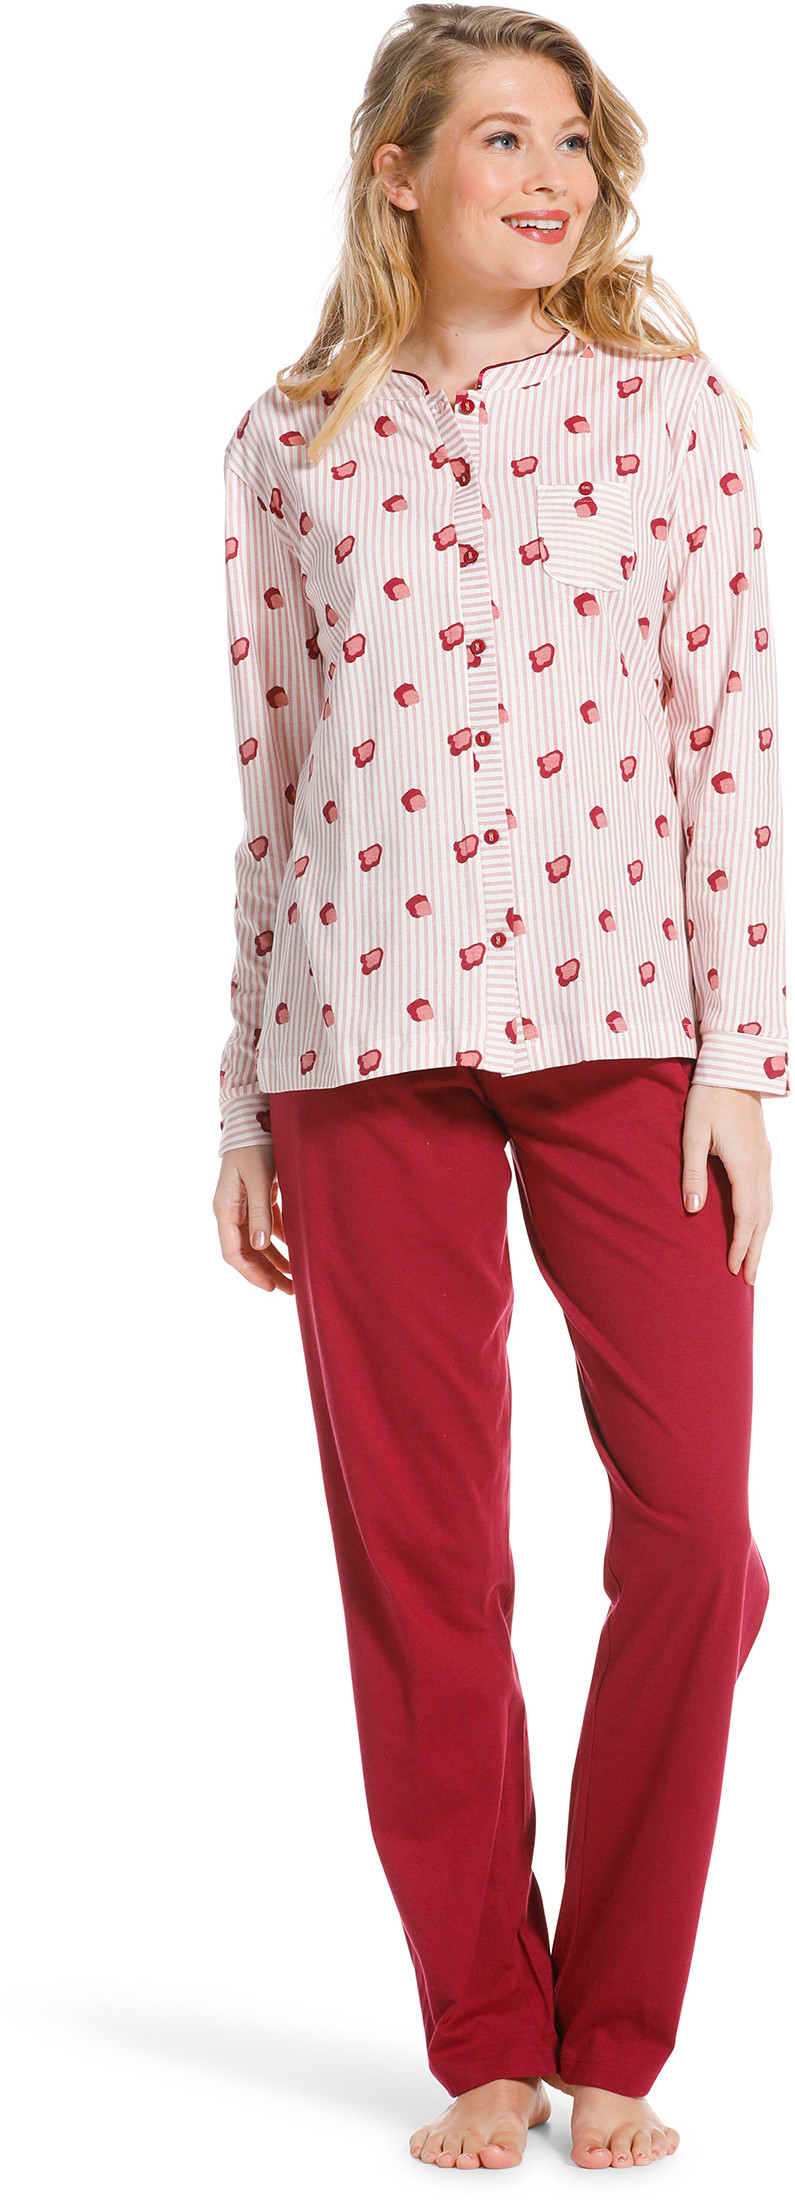 Pastunette doorknoop dames pyjama 20222-104-6-50